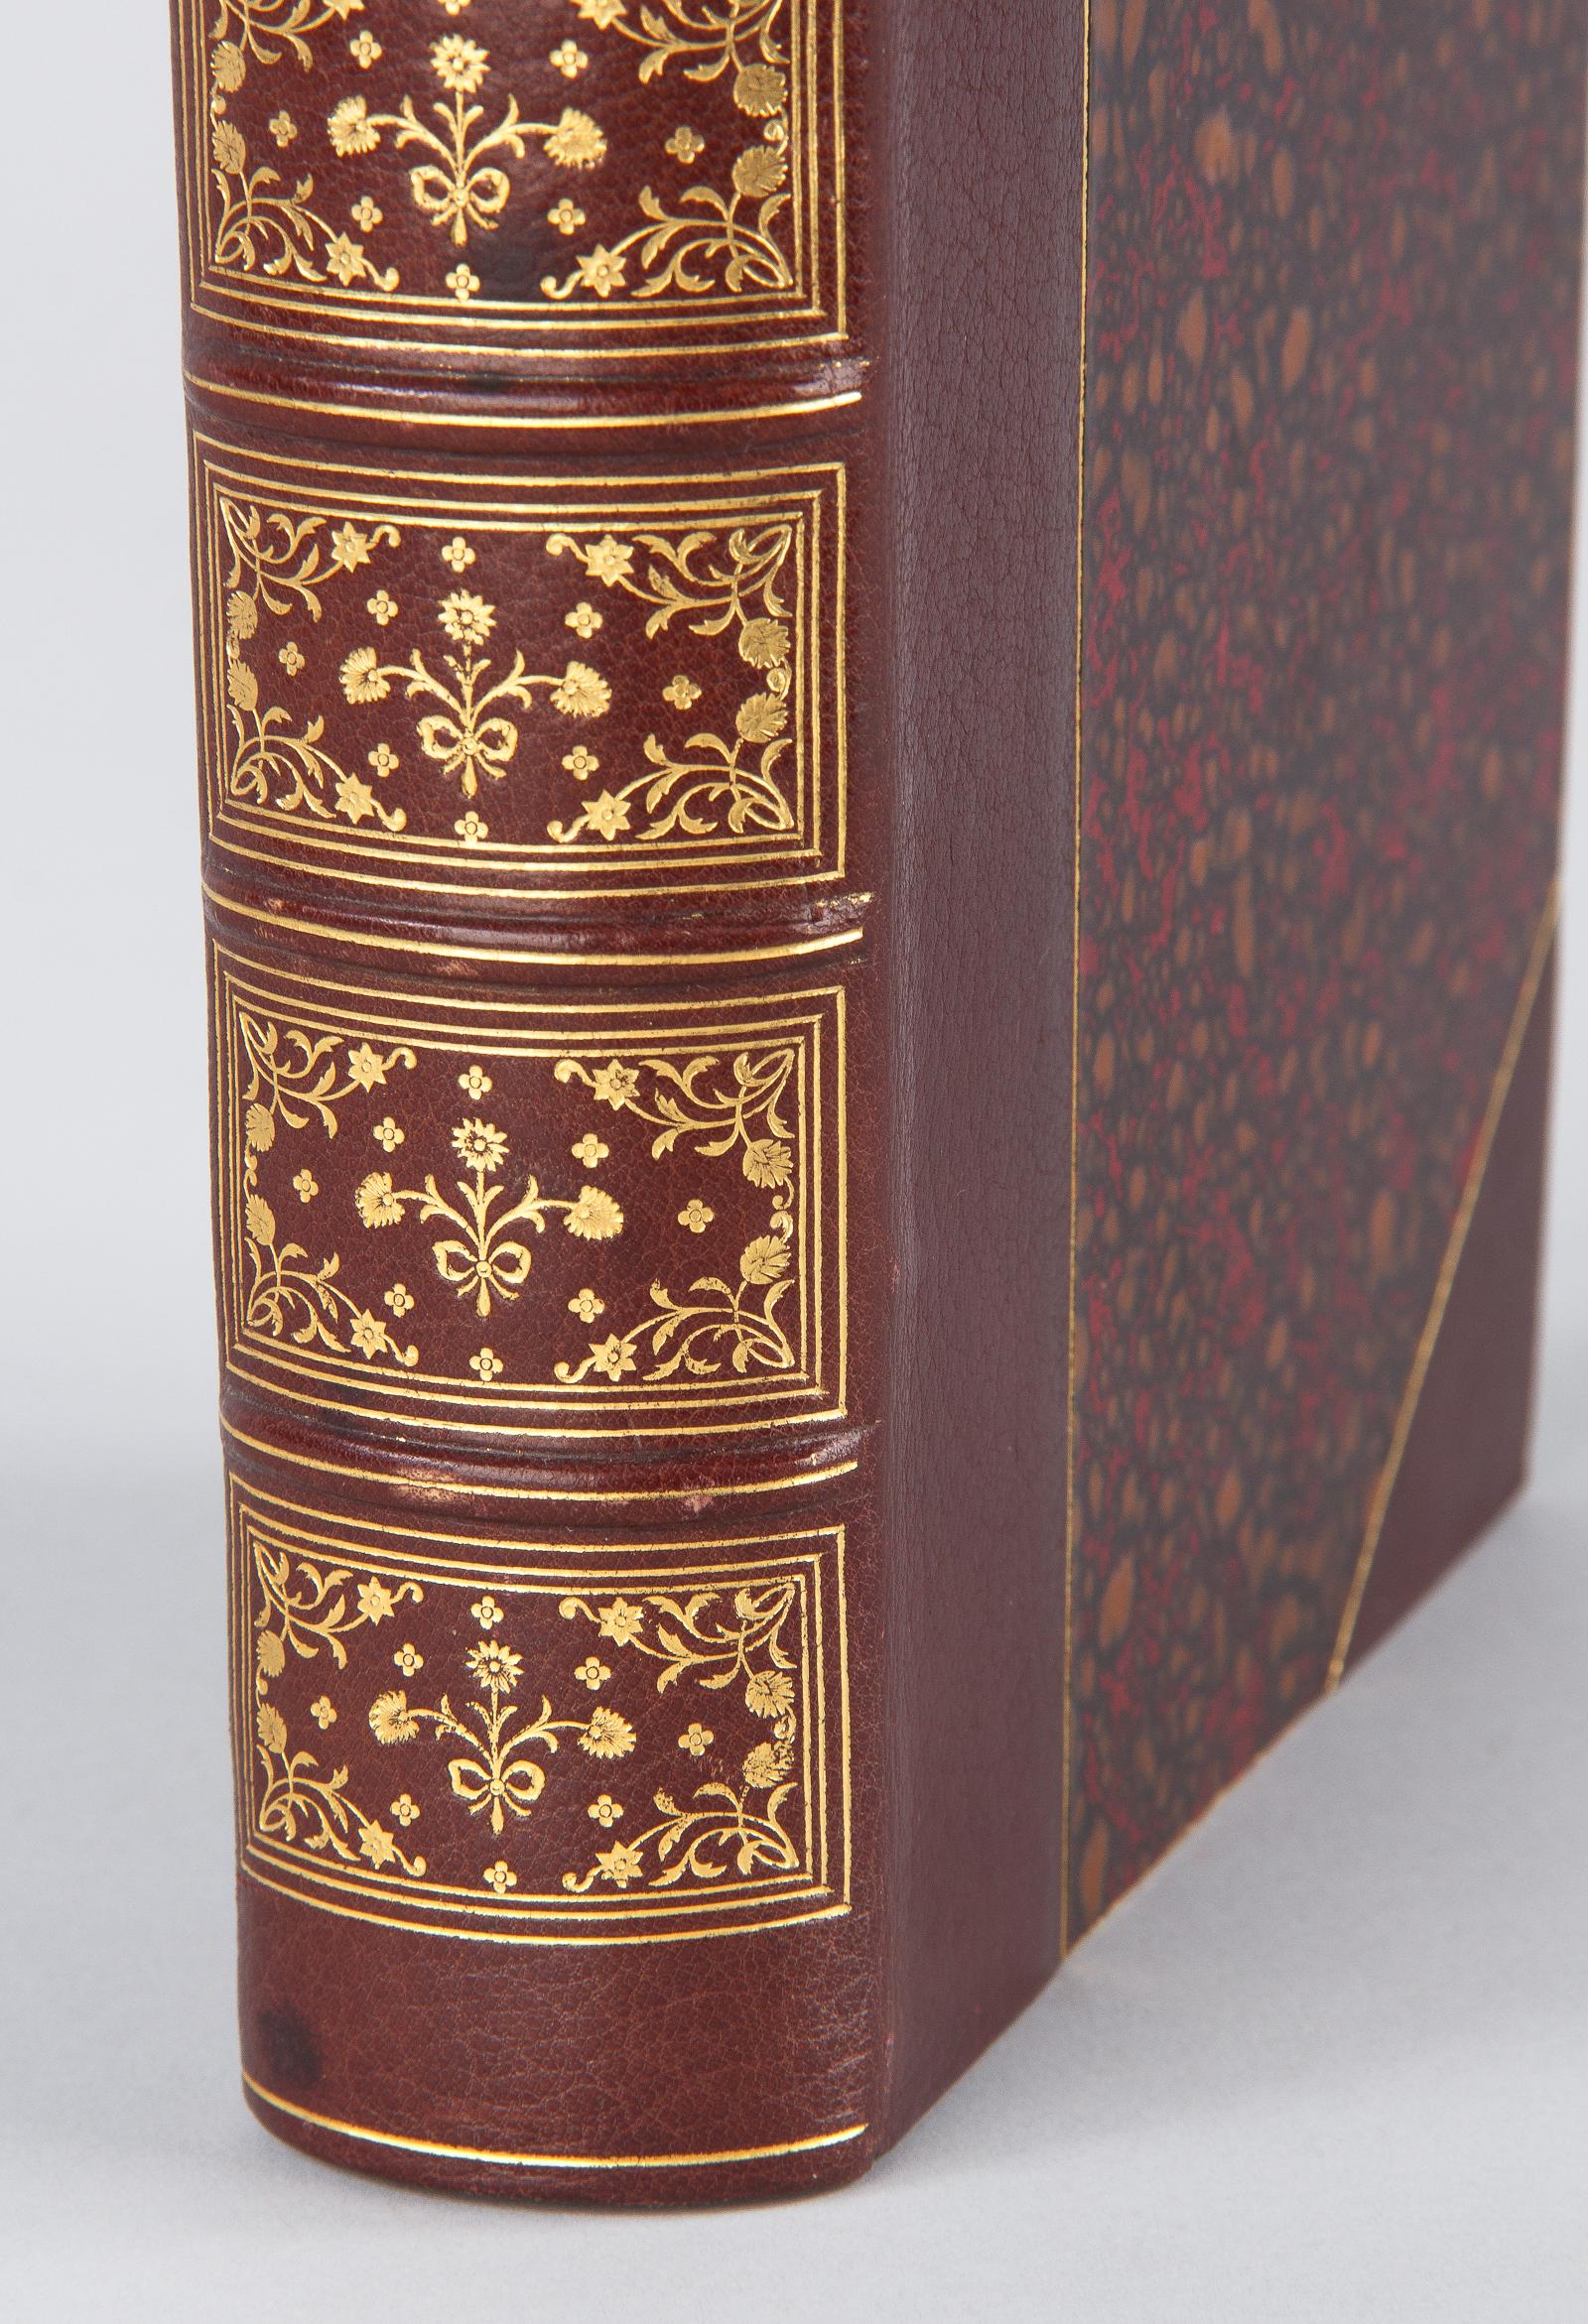 19th Century French Book, La Jeunesse de Leon XIII by Boyer d'Agen, 1896